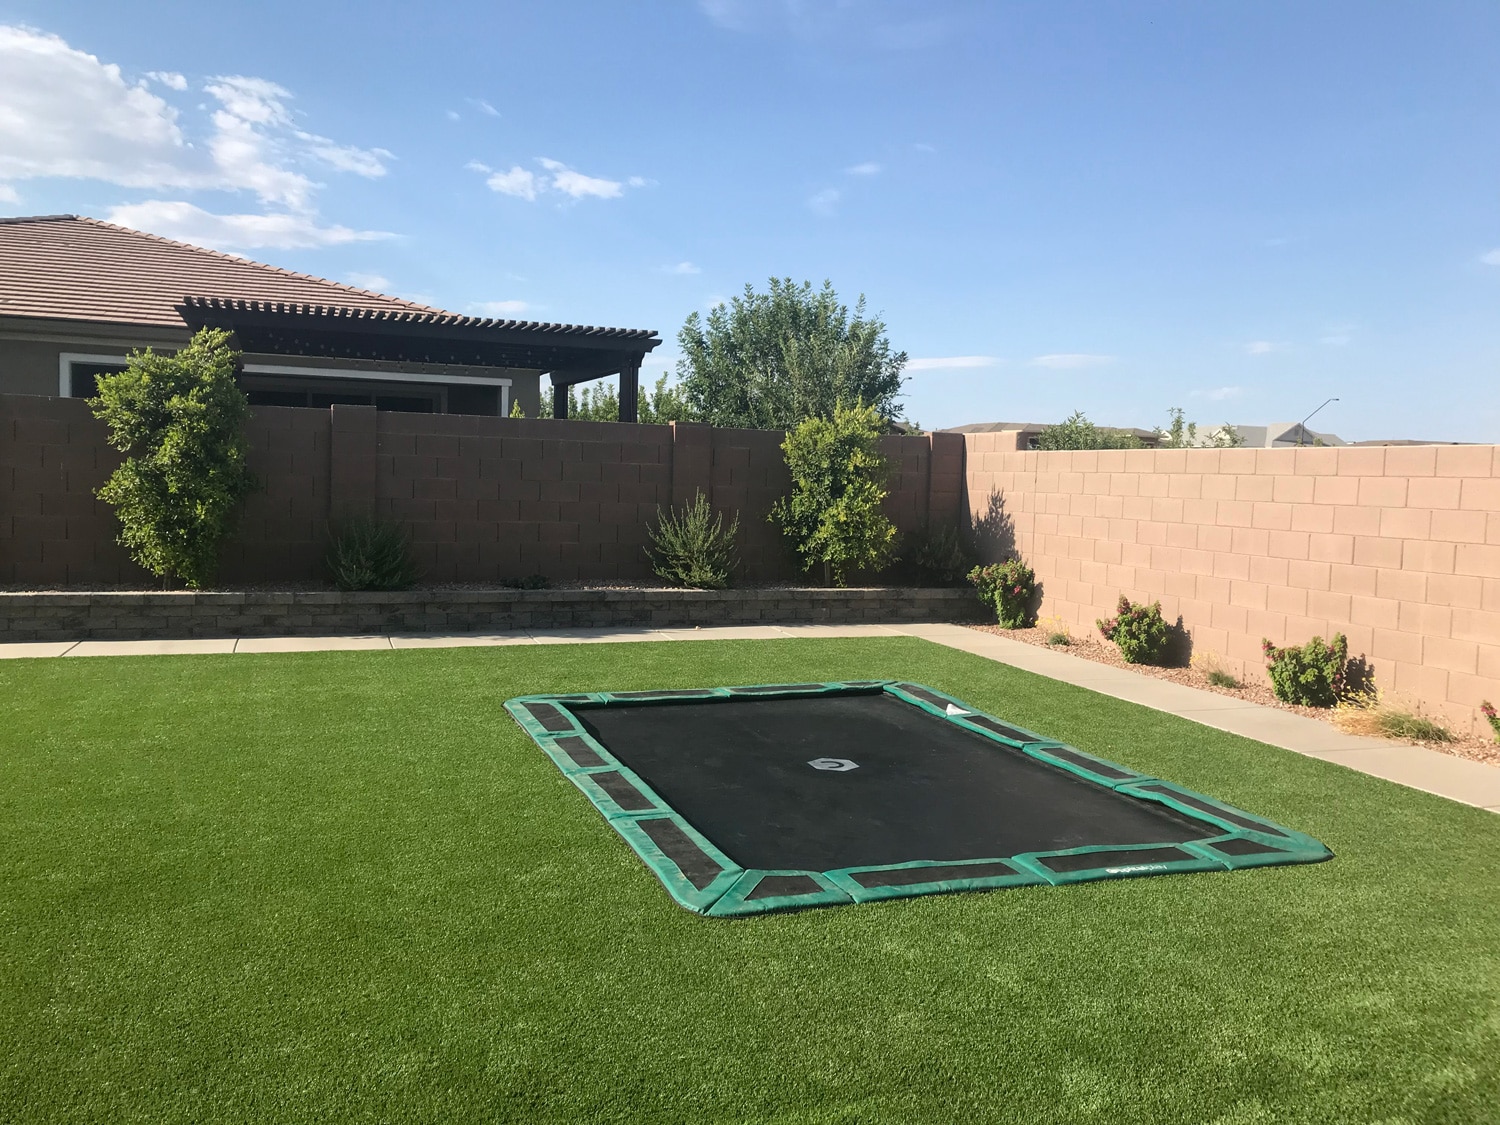 New installed rectangular in-ground trampoline